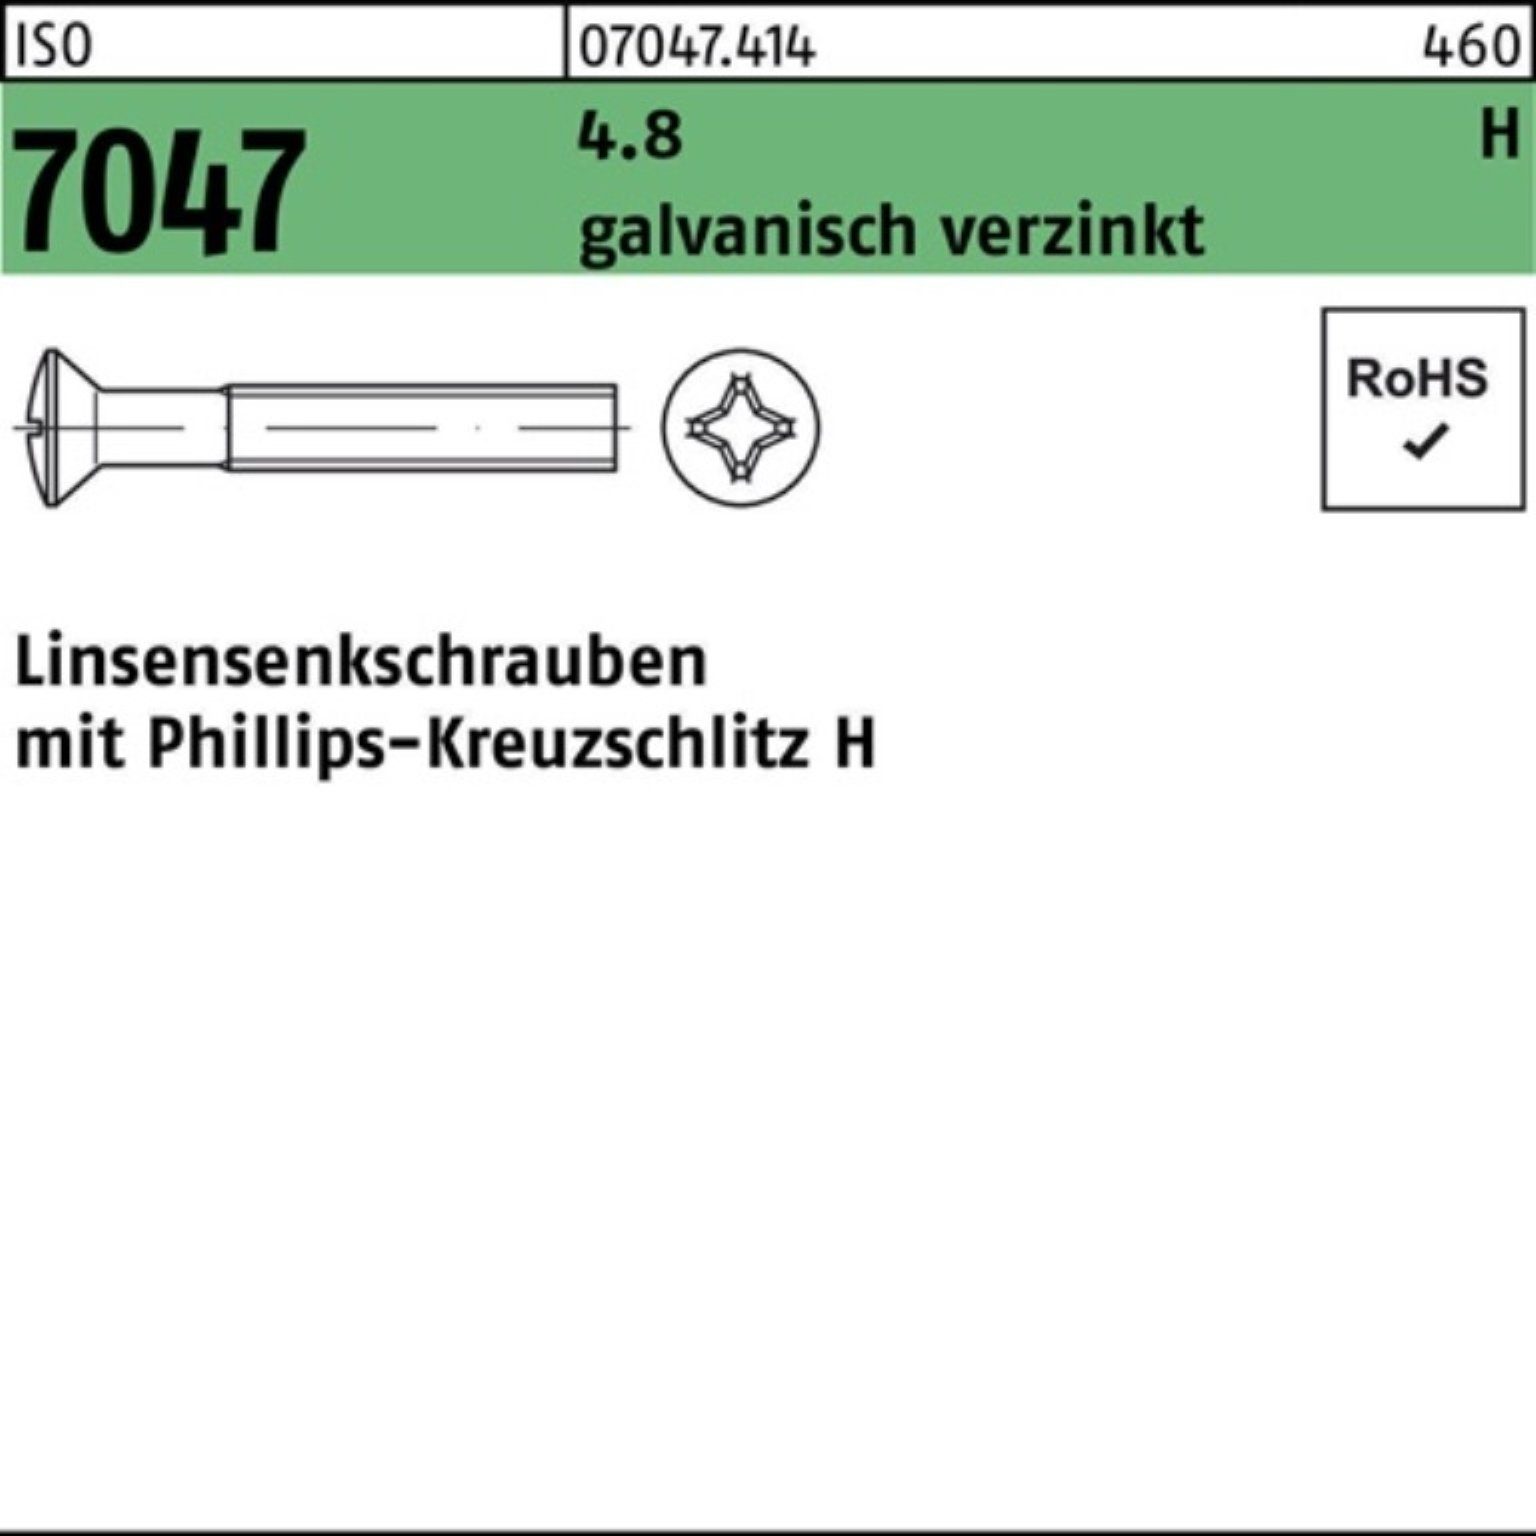 M4x40-H Reyher 200er galv.verz. PH 4.8 Linsenschraube 200St ISO Linsensenkschraube Pack 7047